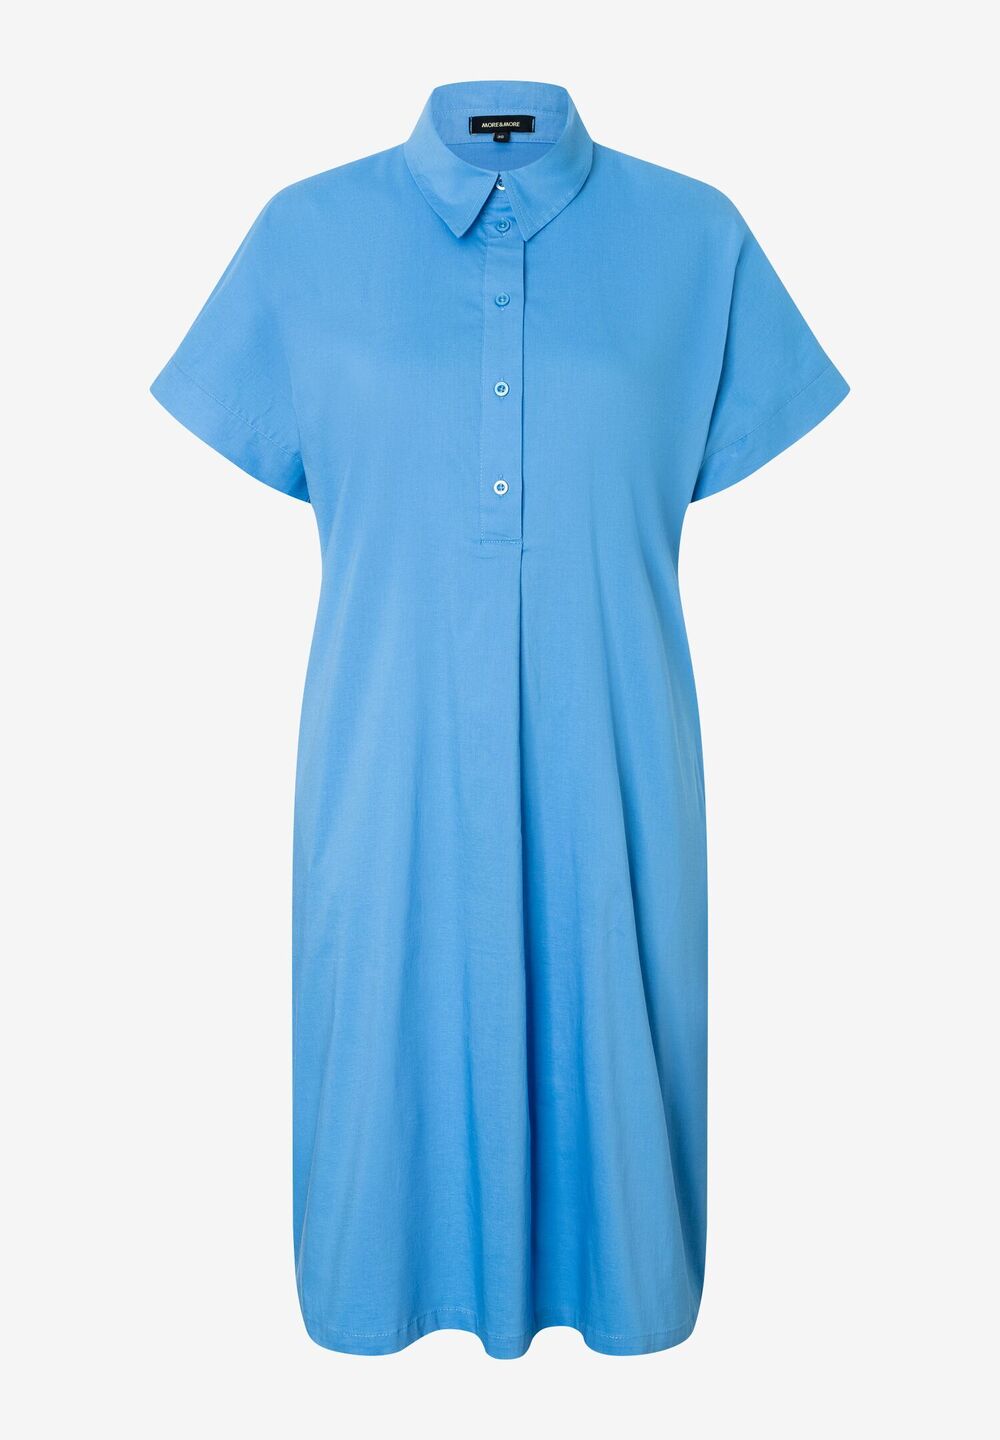 Hemdblusenkleid, happy blue, Sommer-Kollektion, blauDetailansicht 1